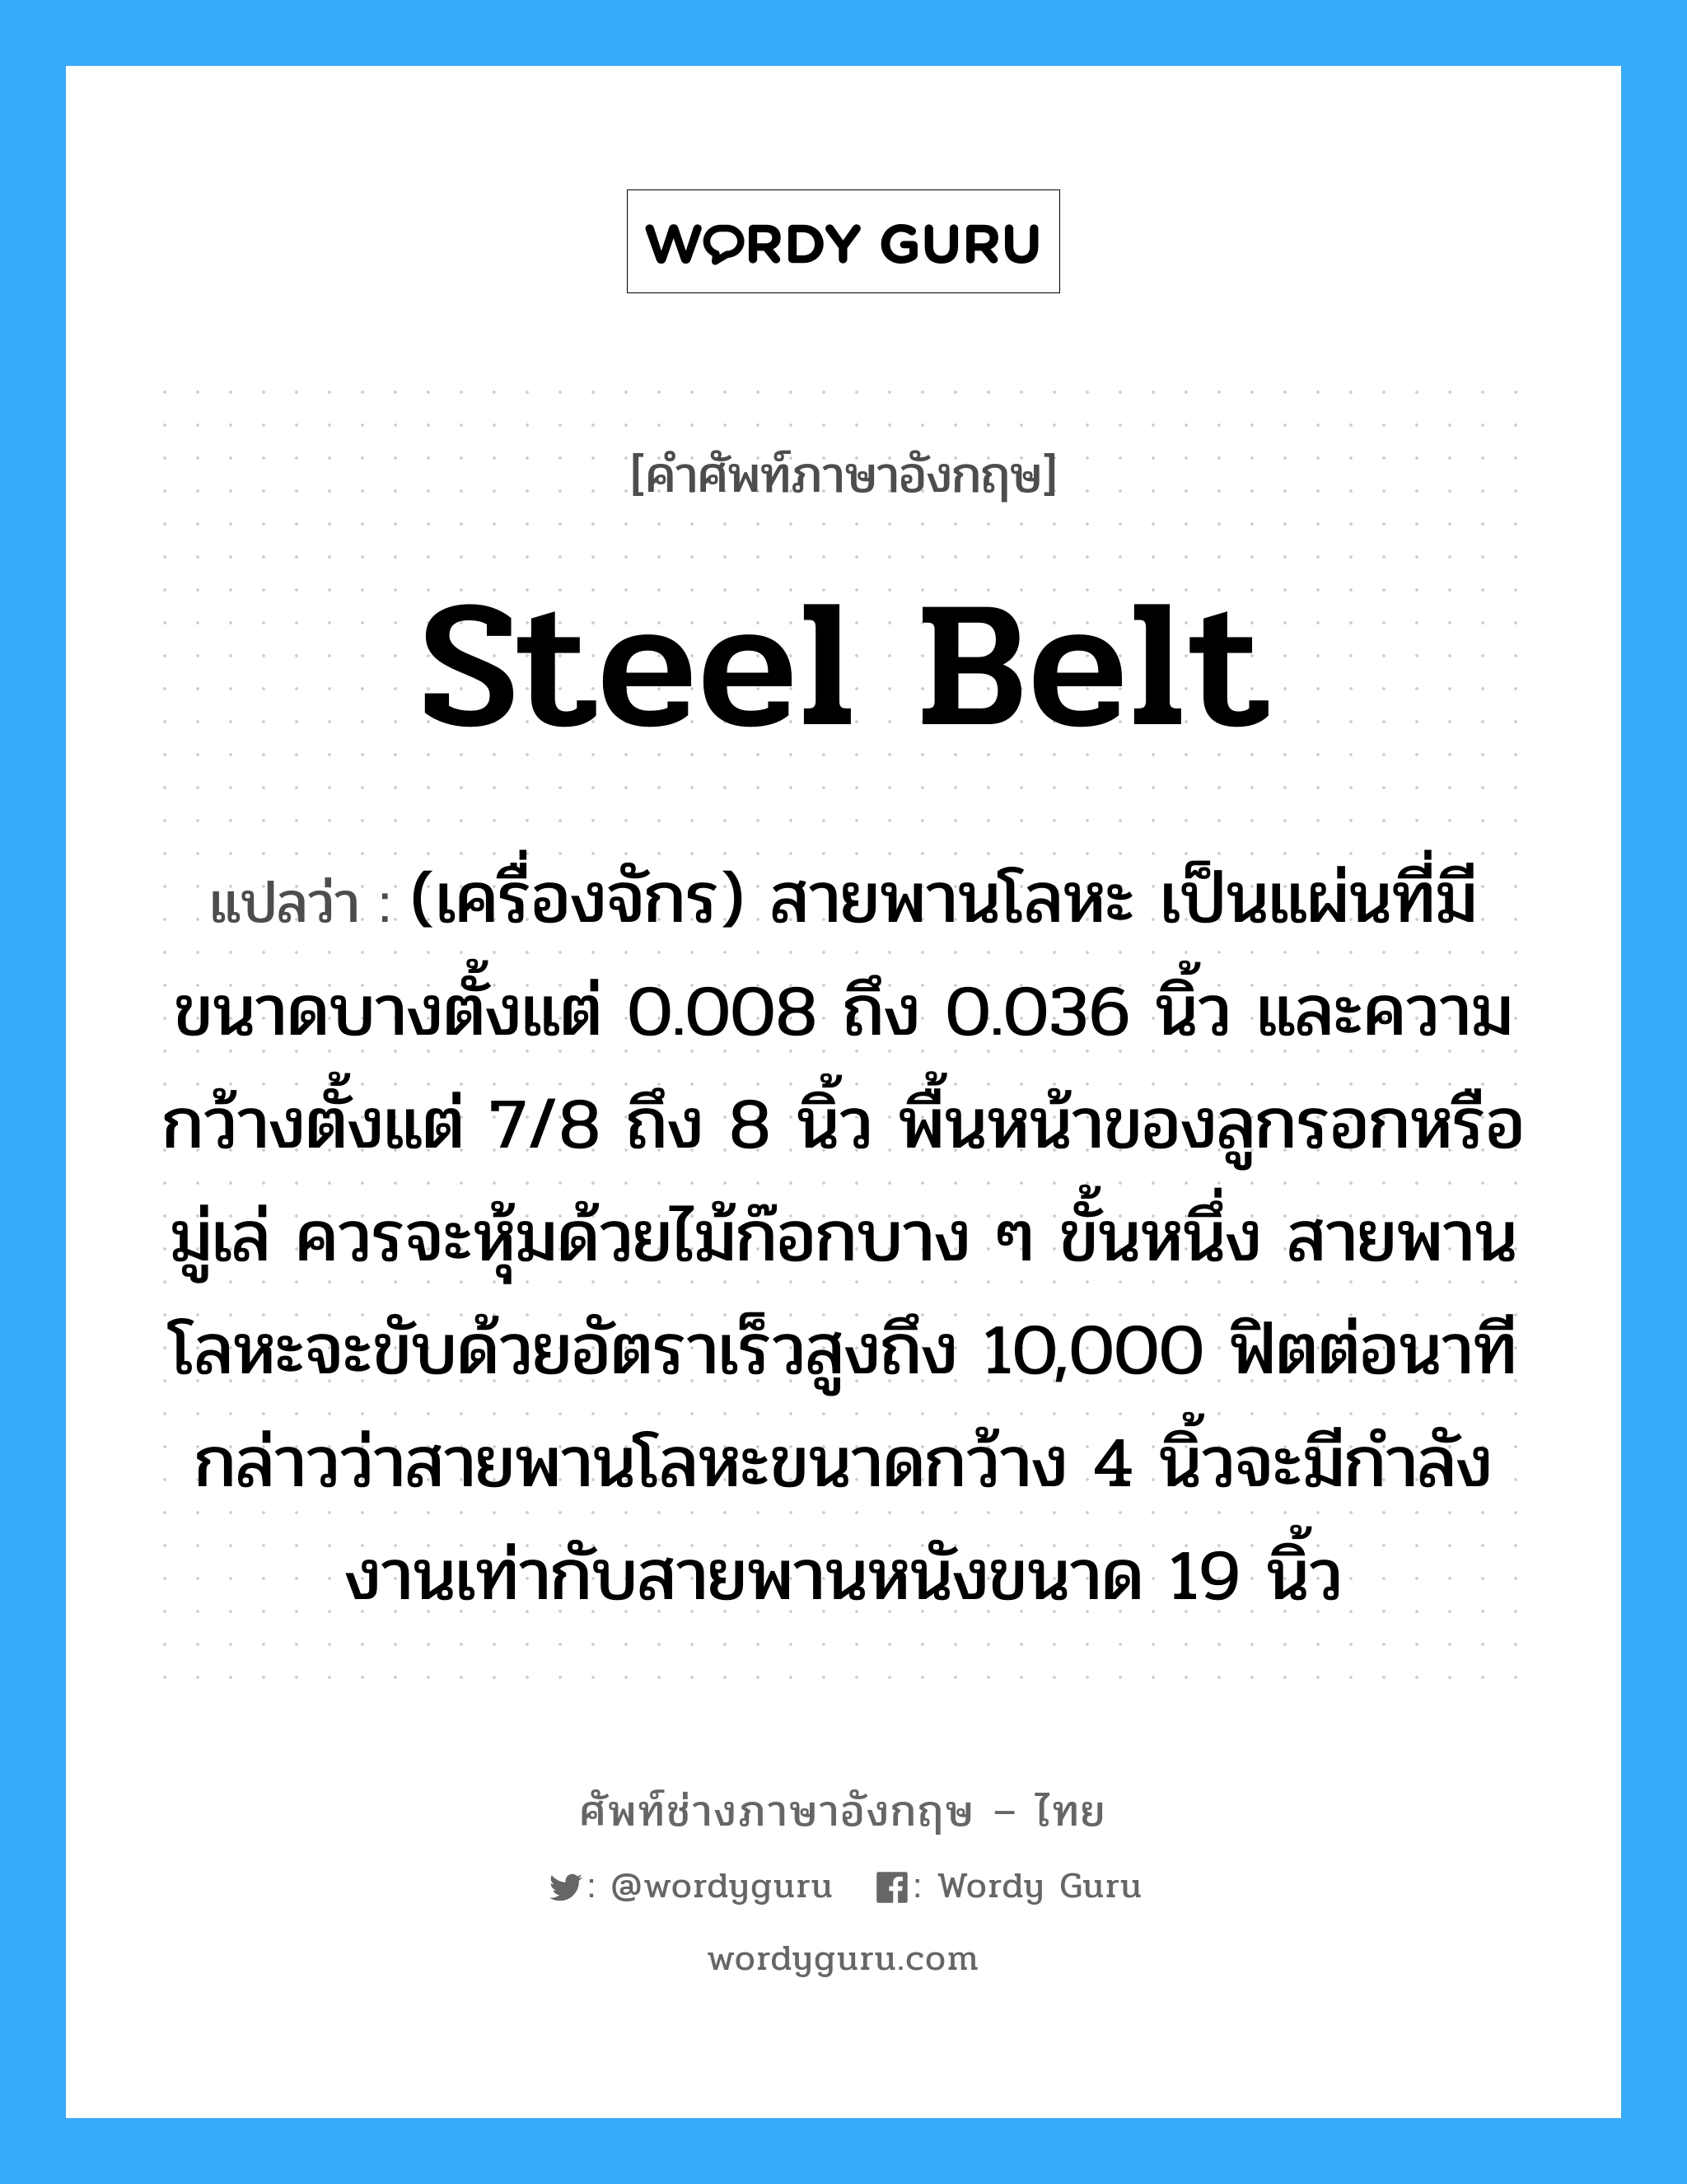 steel belt แปลว่า?, คำศัพท์ช่างภาษาอังกฤษ - ไทย steel belt คำศัพท์ภาษาอังกฤษ steel belt แปลว่า (เครื่องจักร) สายพานโลหะ เป็นแผ่นที่มีขนาดบางตั้งแต่ 0.008 ถึง 0.036 นิ้ว และความกว้างตั้งแต่ 7/8 ถึง 8 นิ้ว พื้นหน้าของลูกรอกหรือมู่เล่ ควรจะหุ้มด้วยไม้ก๊อกบาง ๆ ขั้นหนึ่ง สายพานโลหะจะขับด้วยอัตราเร็วสูงถึง 10,000 ฟิตต่อนาที กล่าวว่าสายพานโลหะขนาดกว้าง 4 นิ้วจะมีกำลังงานเท่ากับสายพานหนังขนาด 19 นิ้ว